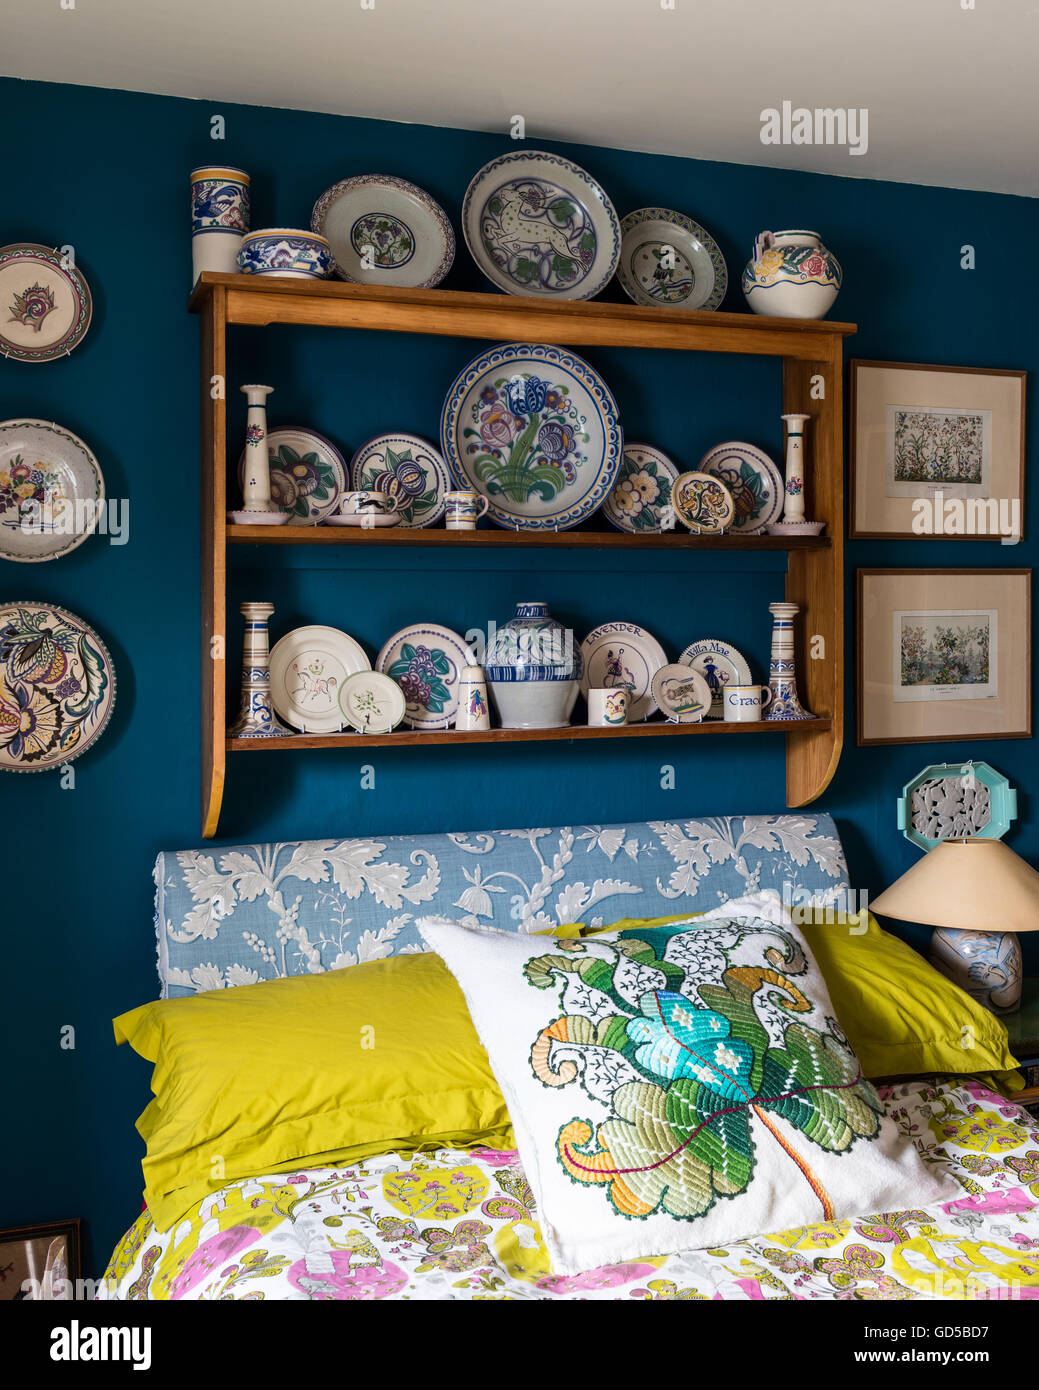 Poole cerámica aparece en el estante de madera en la habitación pintada en el espacio profundo azul por poco Greene.La cama es tapizado y la cubierta Foto de stock